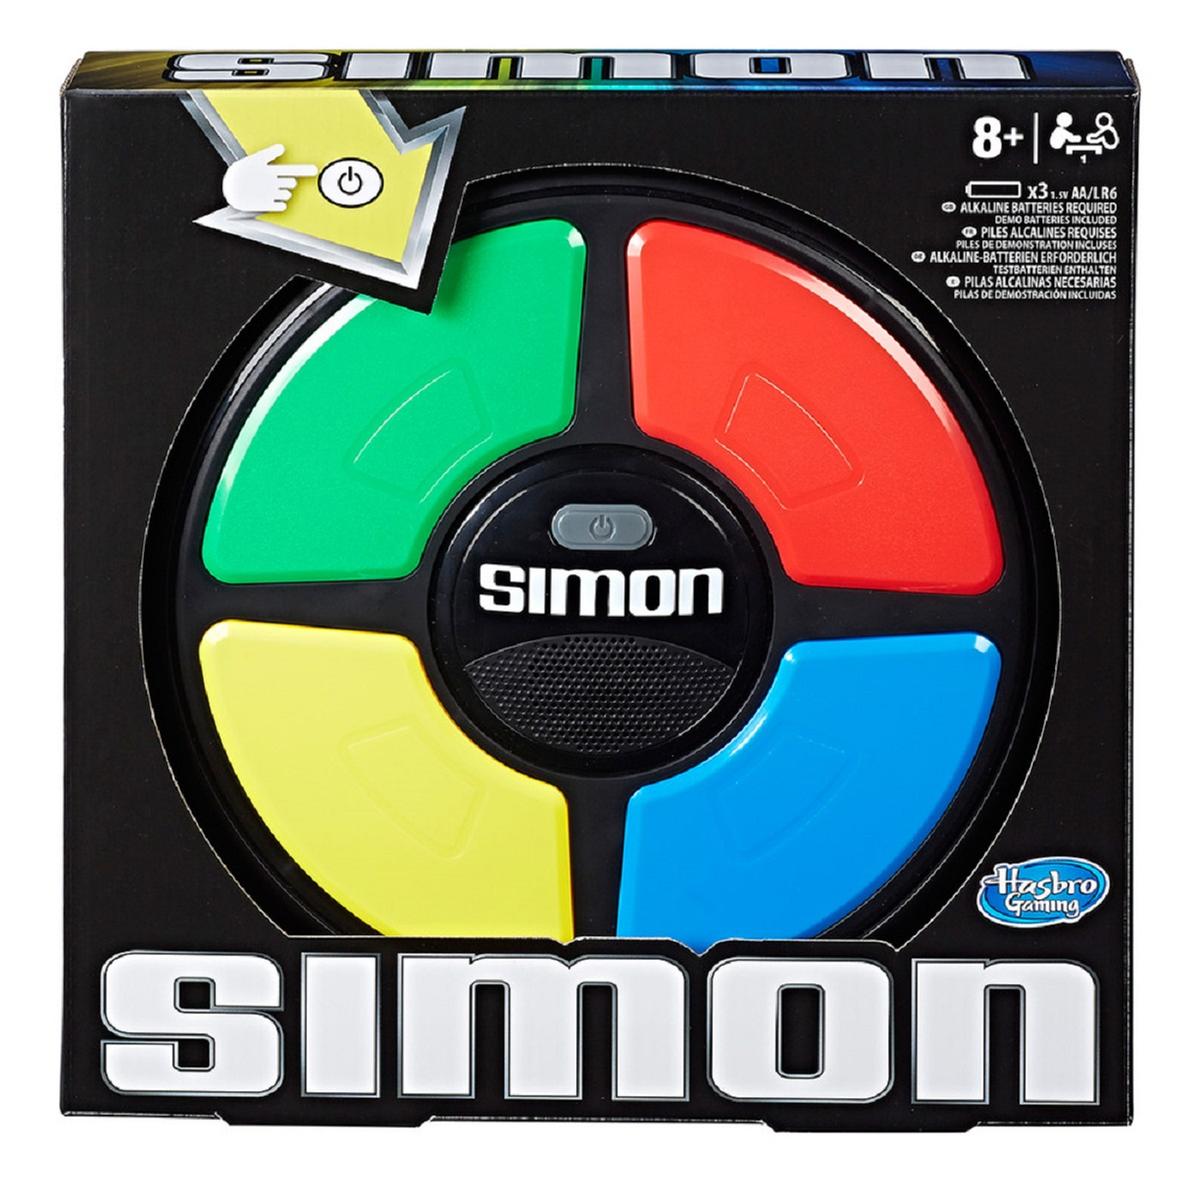 Simon | Juegos Electrónicos | Toys"R"Us España